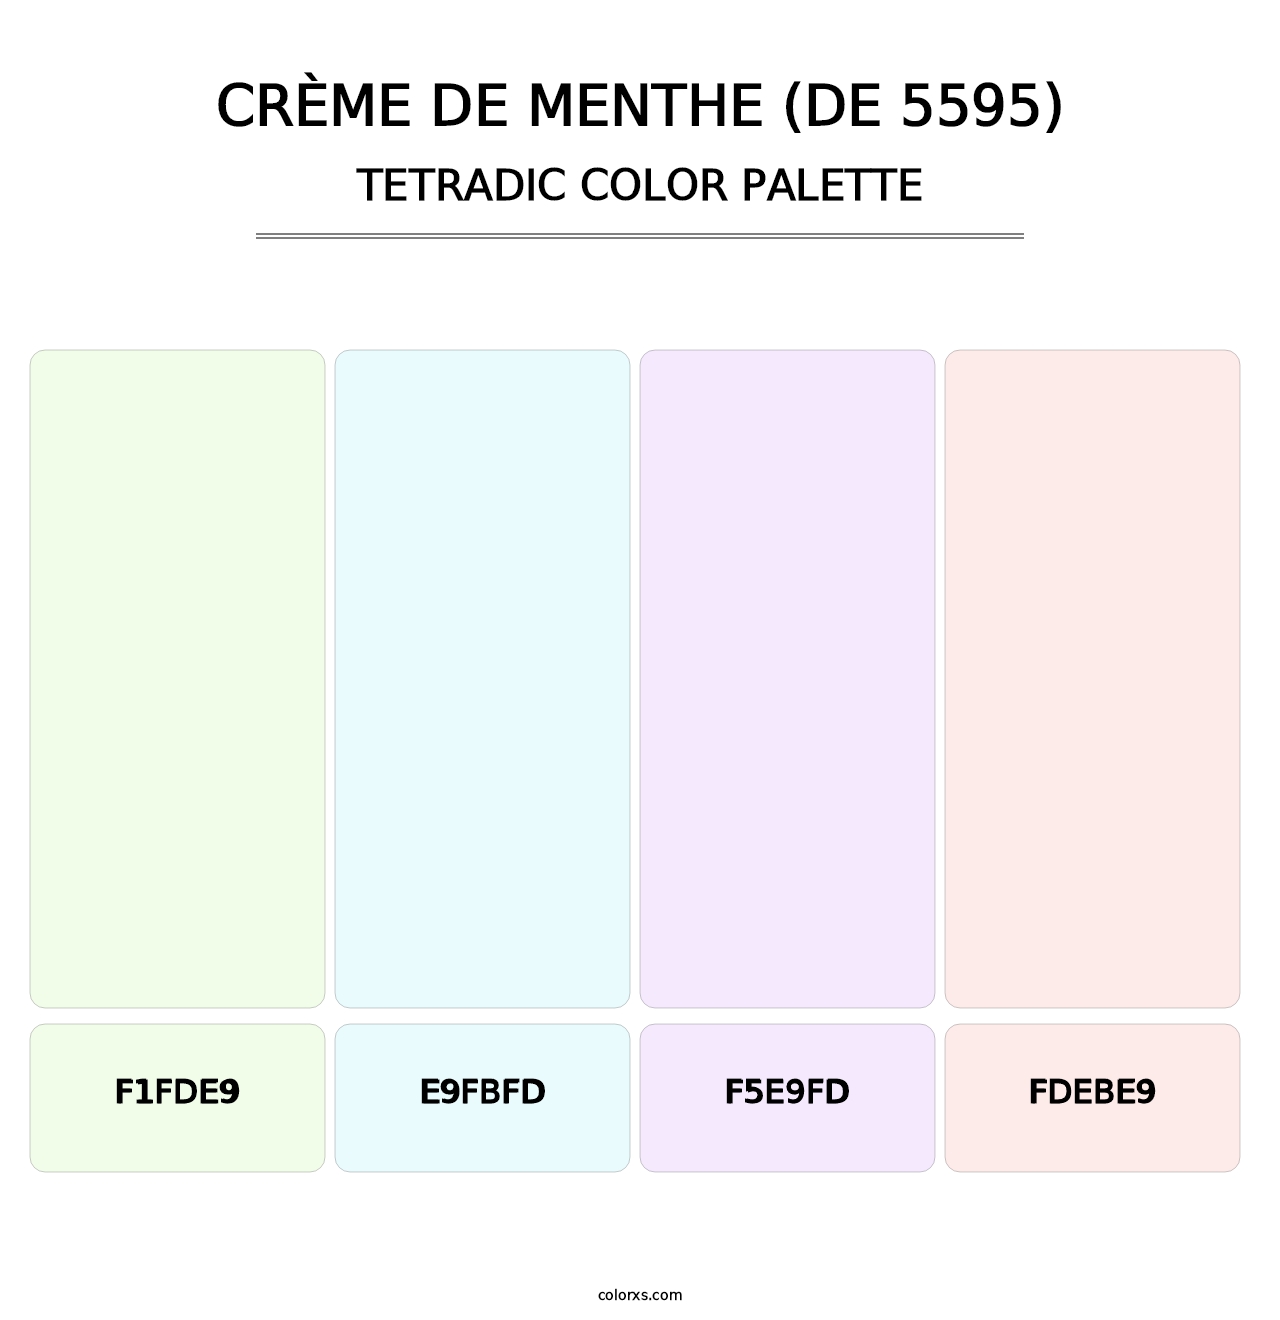 Crème de Menthe (DE 5595) - Tetradic Color Palette